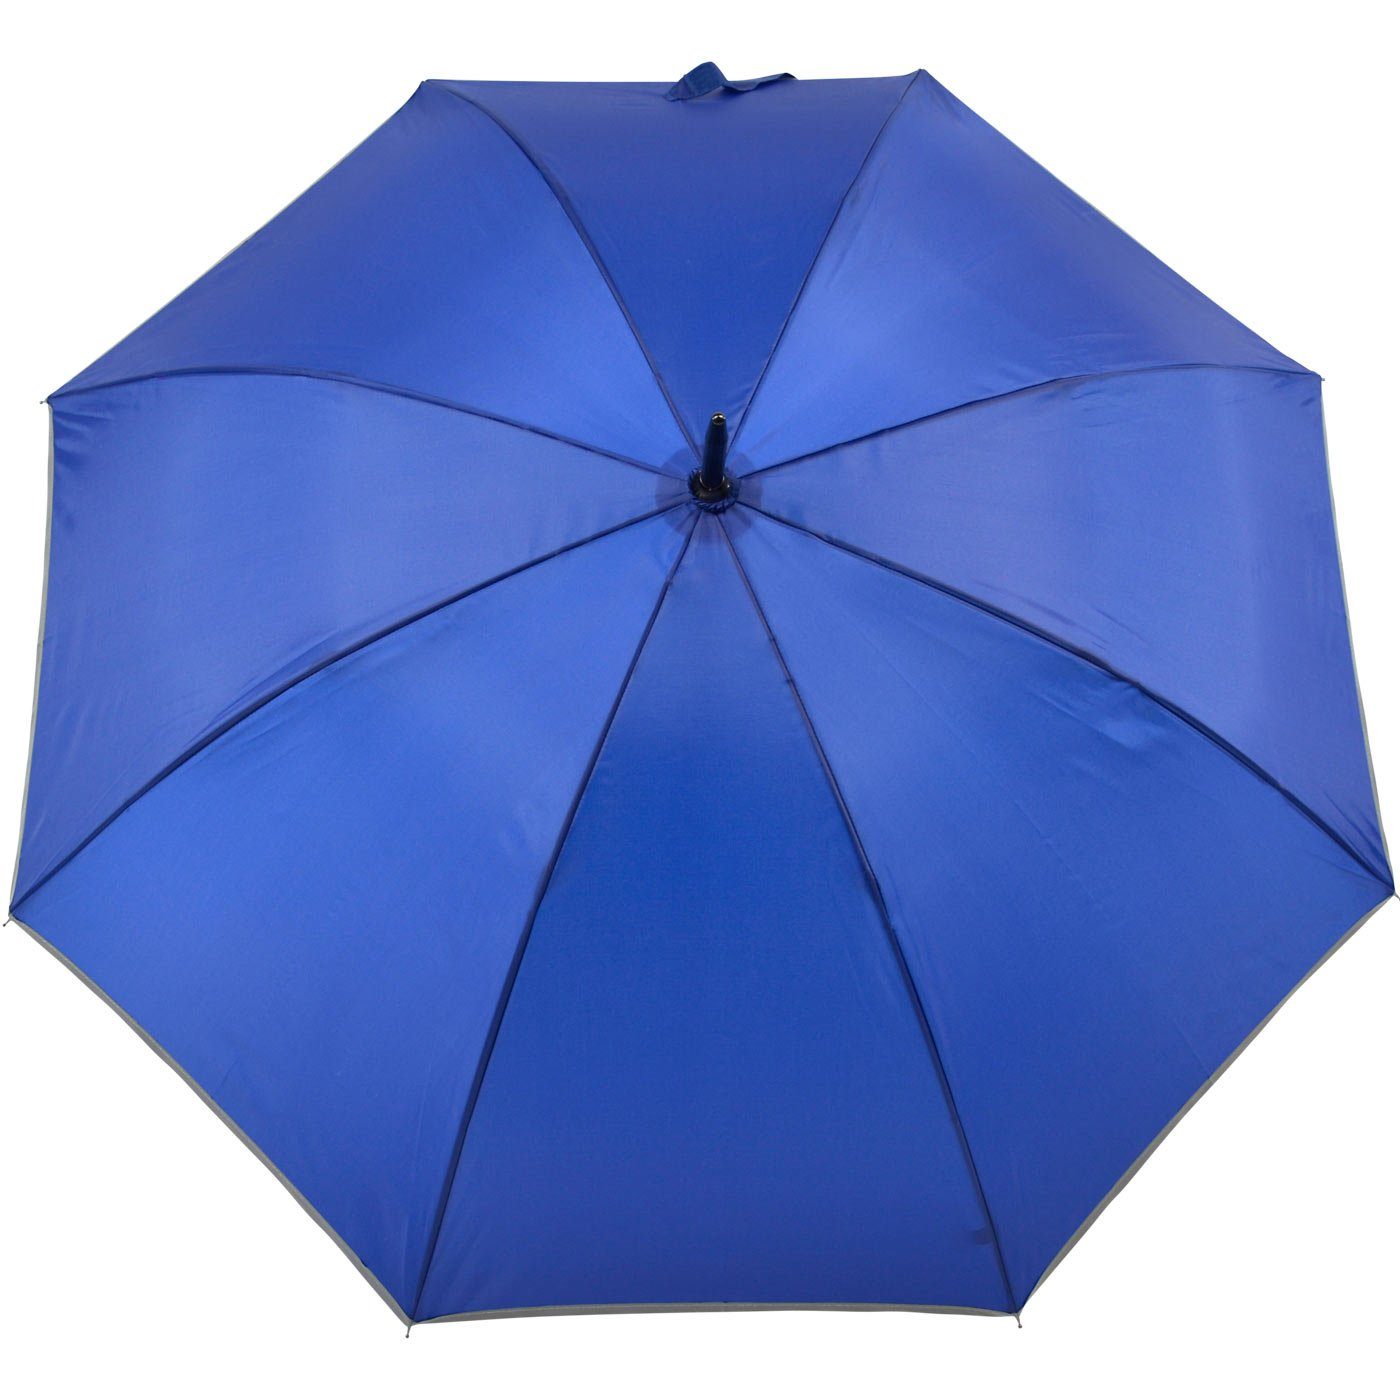 Reflex Fiberglas Falcone® reflex blau Impliva leichter Stockregenschirm Borte, reflektierende Sicherheitsschirm